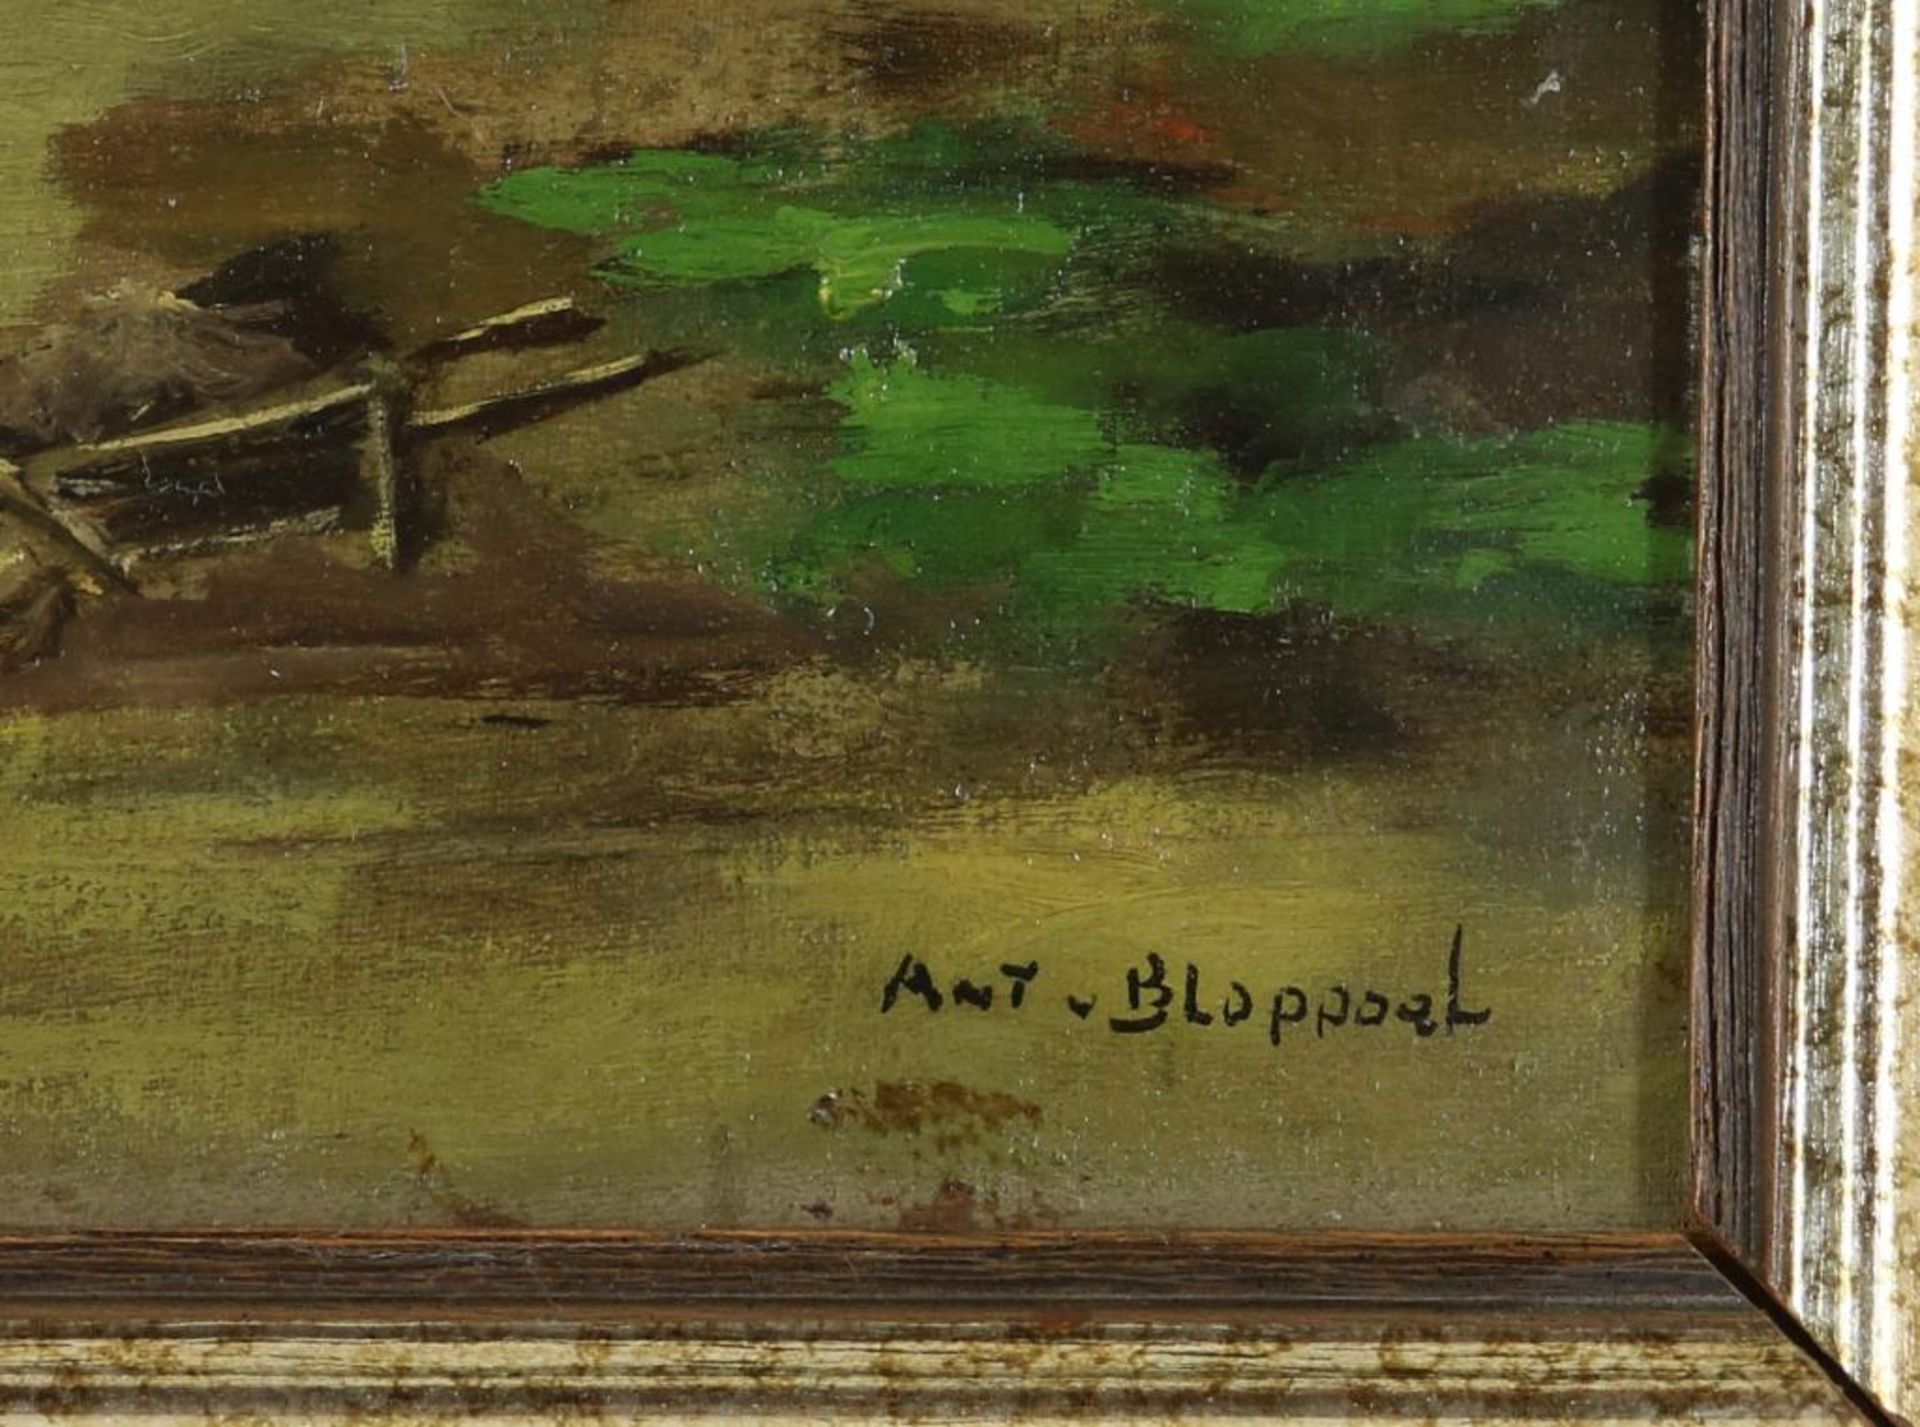 Bloppoel, Antony van. Kippen op erf - Image 4 of 4